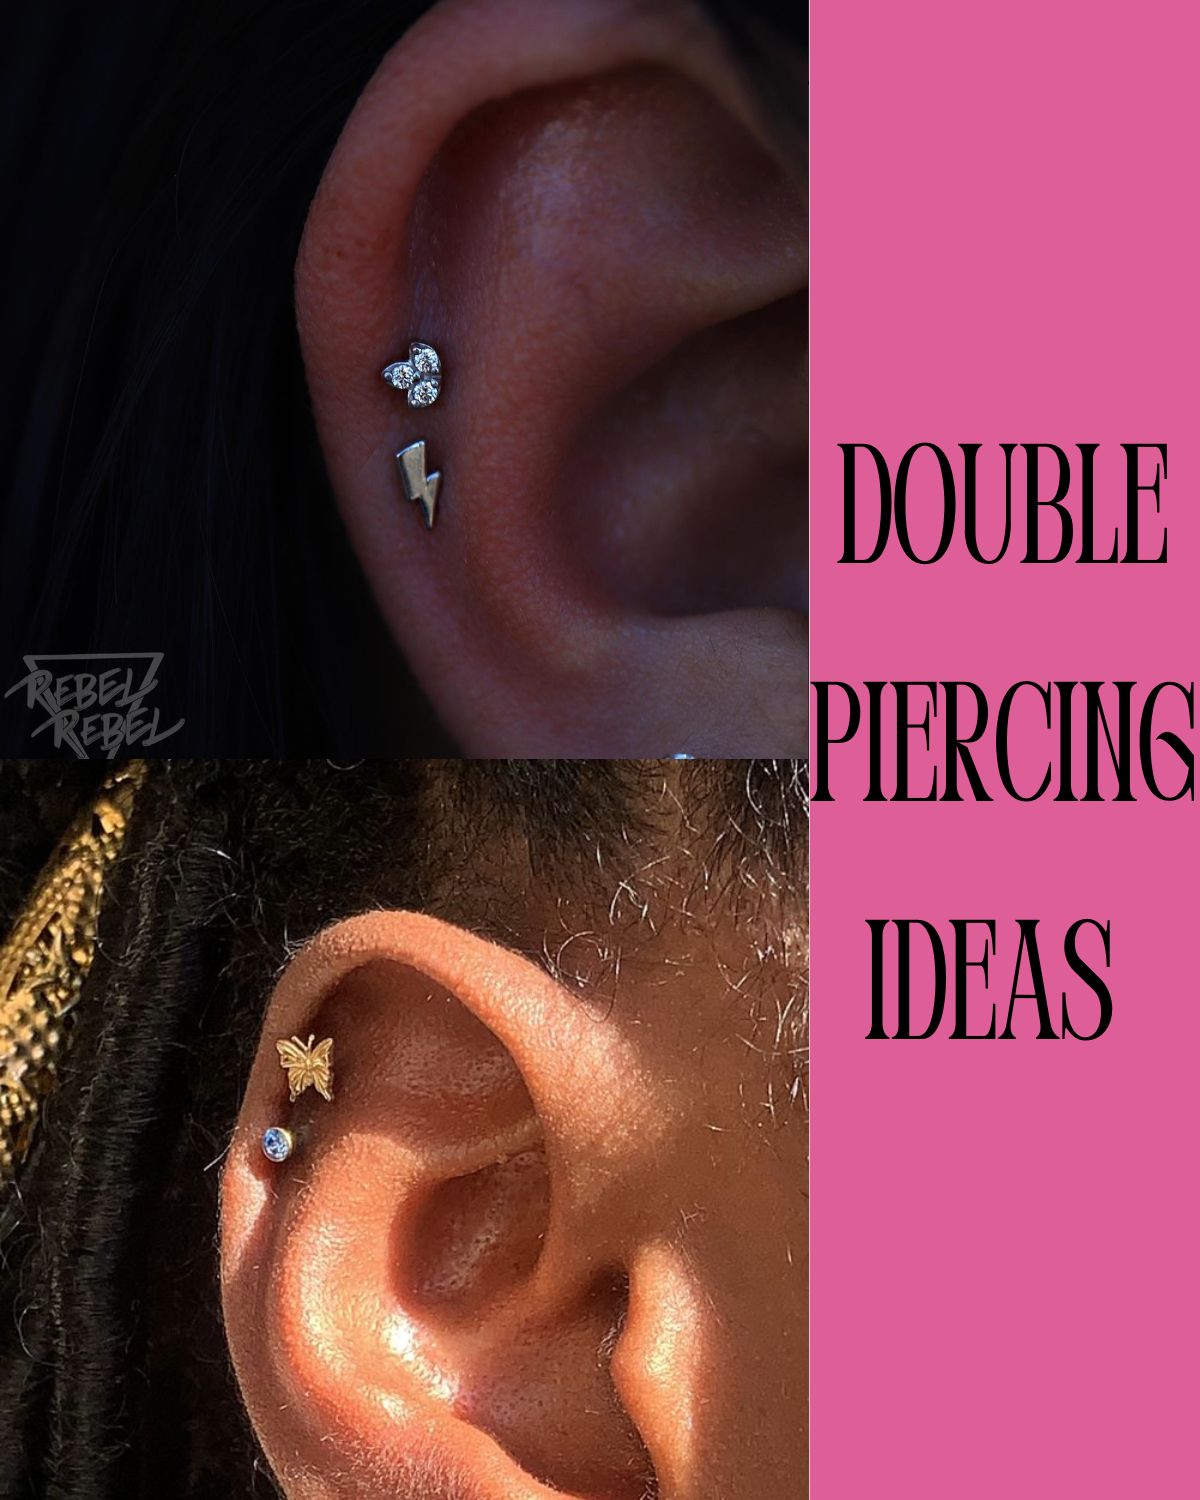 Double helix piercings 